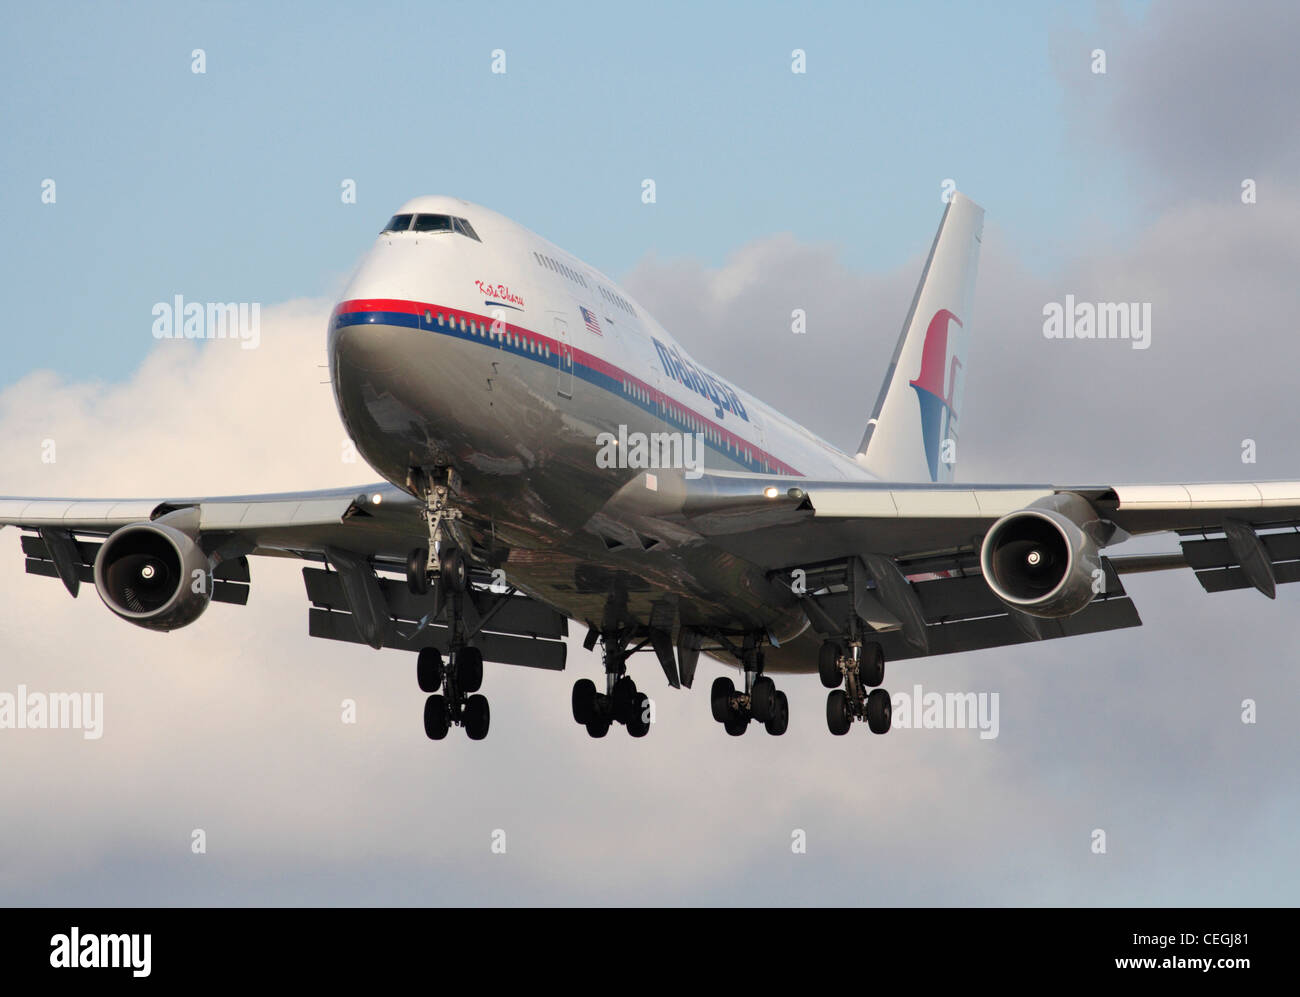 Malaysia Airlines Boeing 747-400 jumbo jet à l'arrivée. Close up Vue de face. Banque D'Images